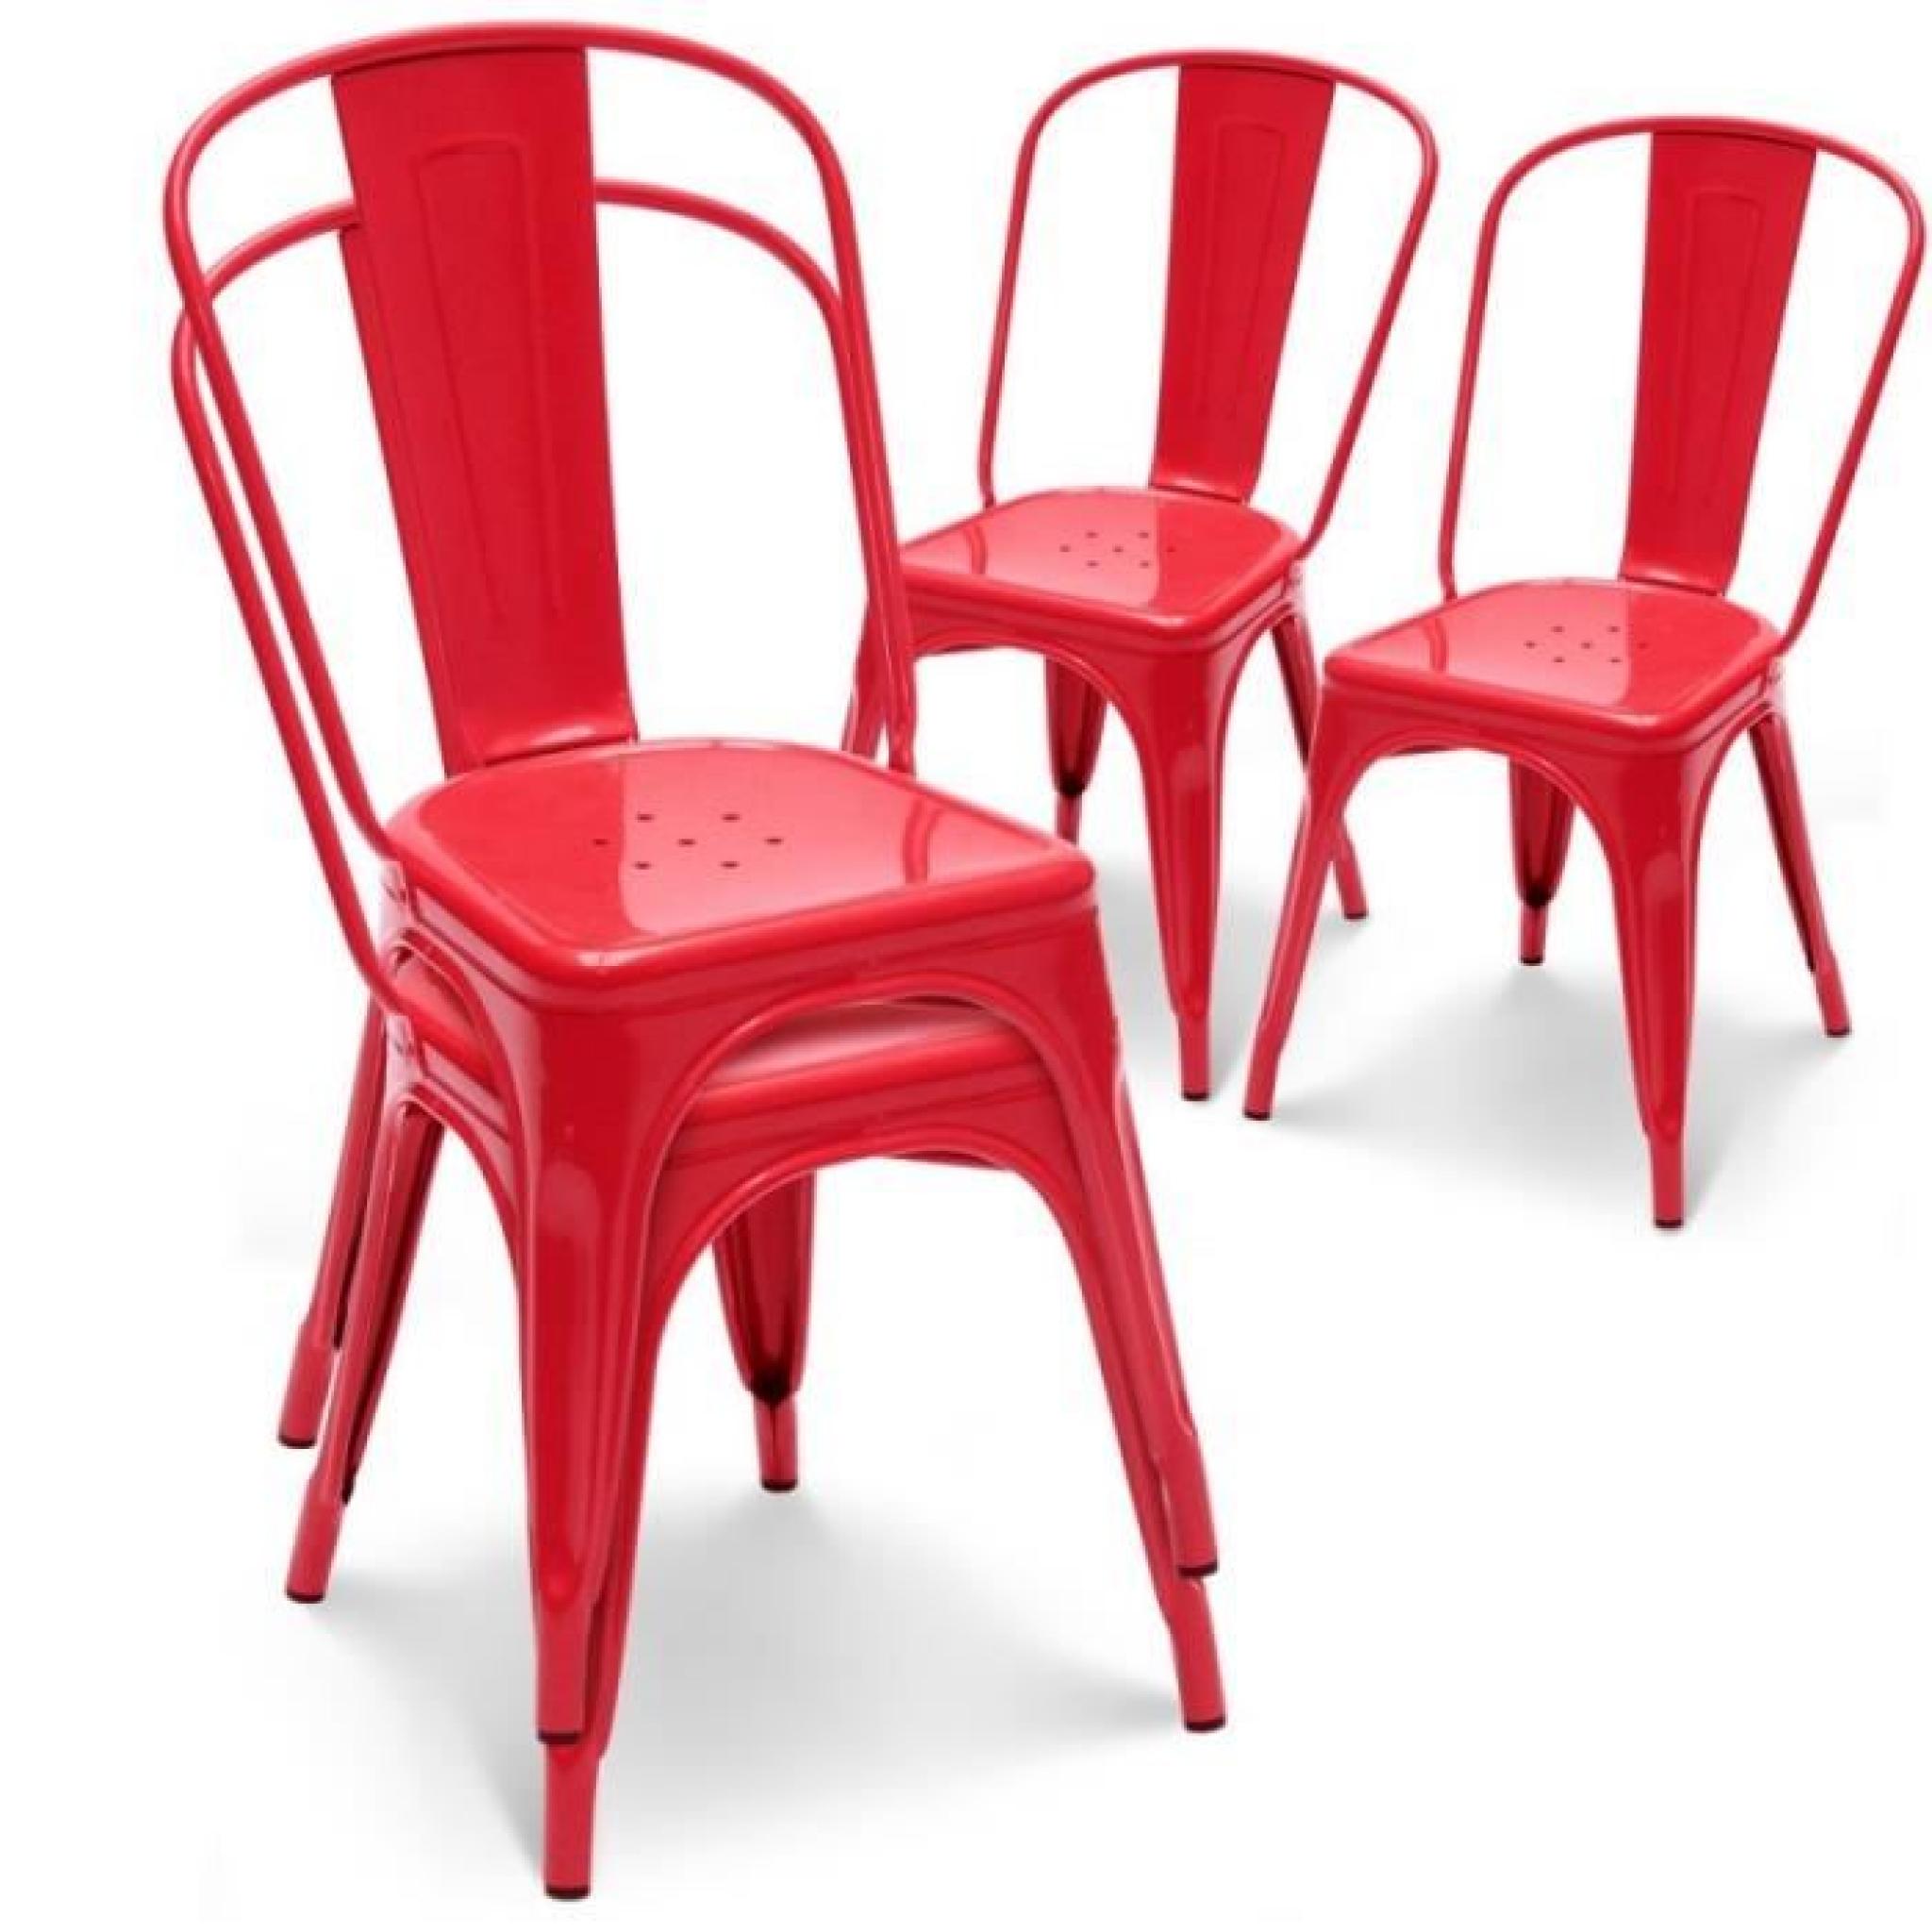 Chaise en métal rouge empilable lot de 4